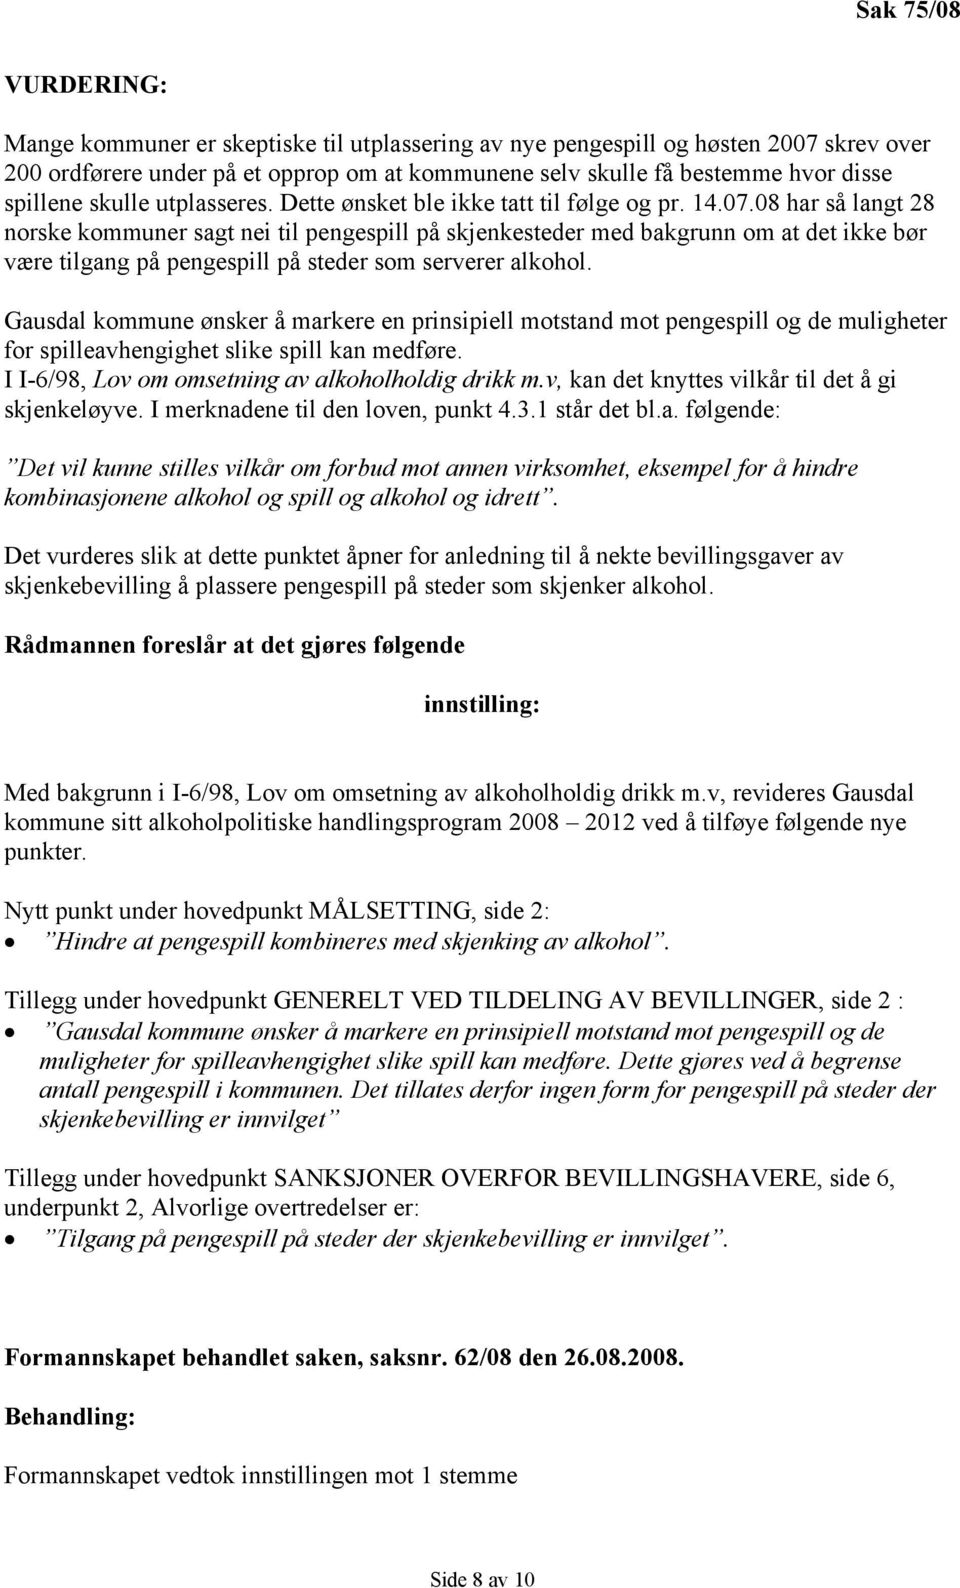 08 har så langt 28 norske kommuner sagt nei til pengespill på skjenkesteder med bakgrunn om at det ikke bør være tilgang på pengespill på steder som serverer alkohol.